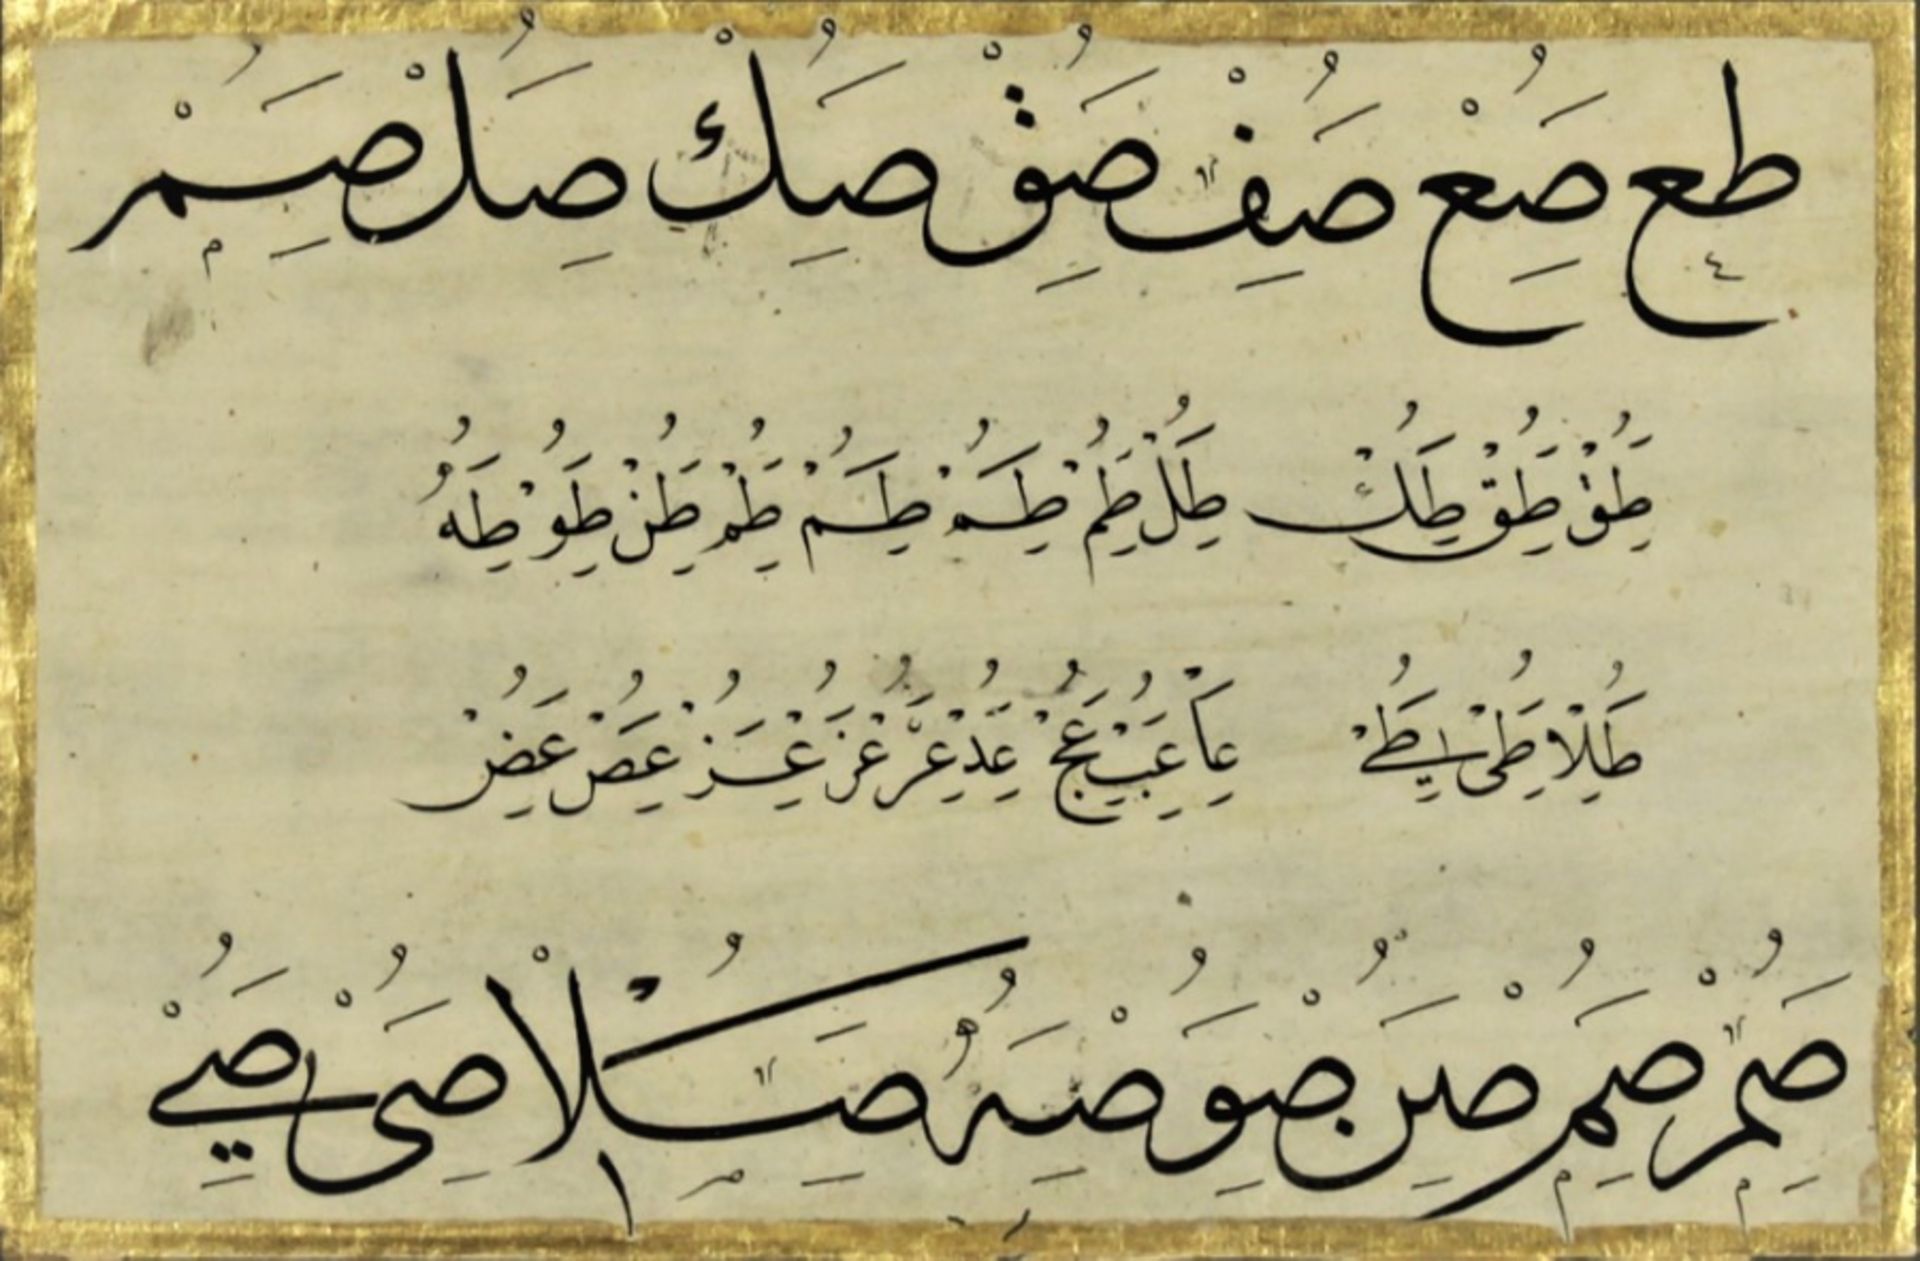 Calligraphy Tuluth Nesih Hurufat Mesk - Image 2 of 3